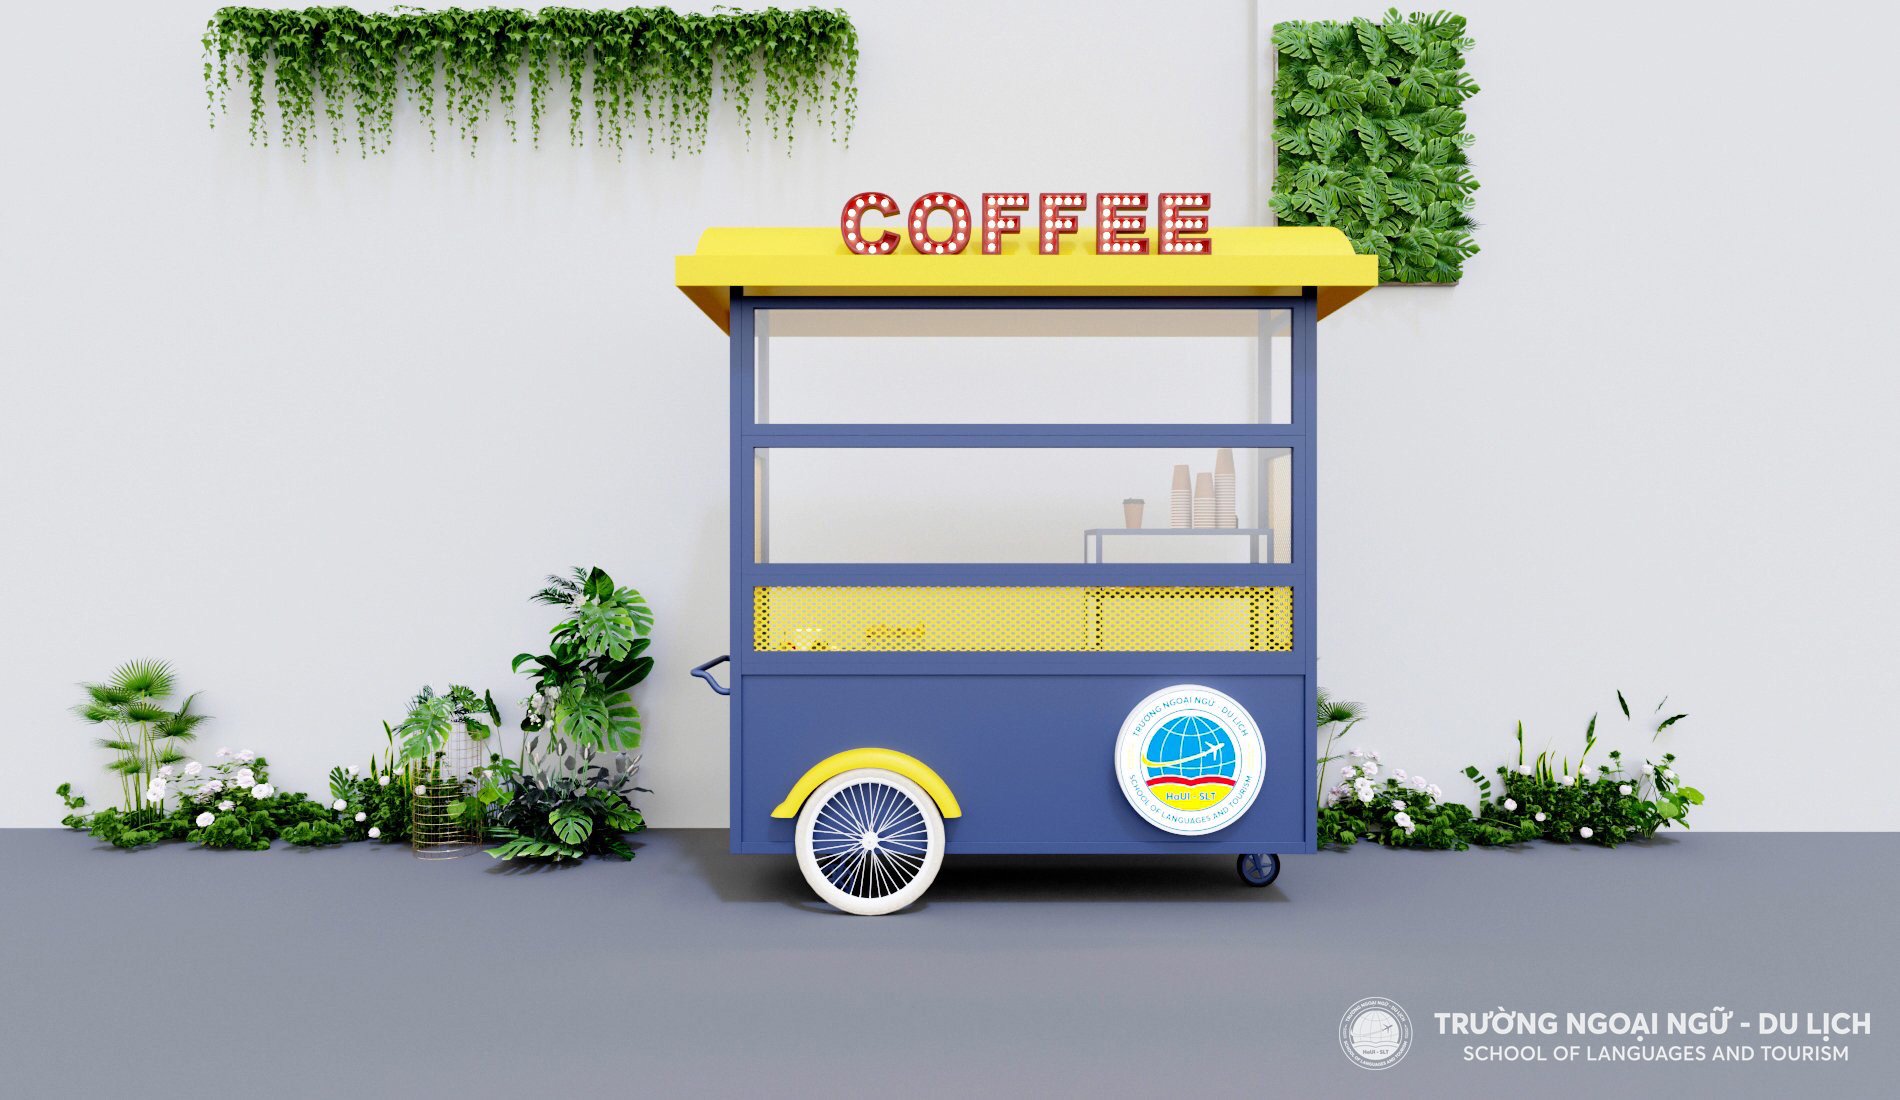 COMING SOON: 4S COFFEE - Mô hình đổi mới sáng tạo của sinh viên Trường Ngoại ngữ - Du lịch